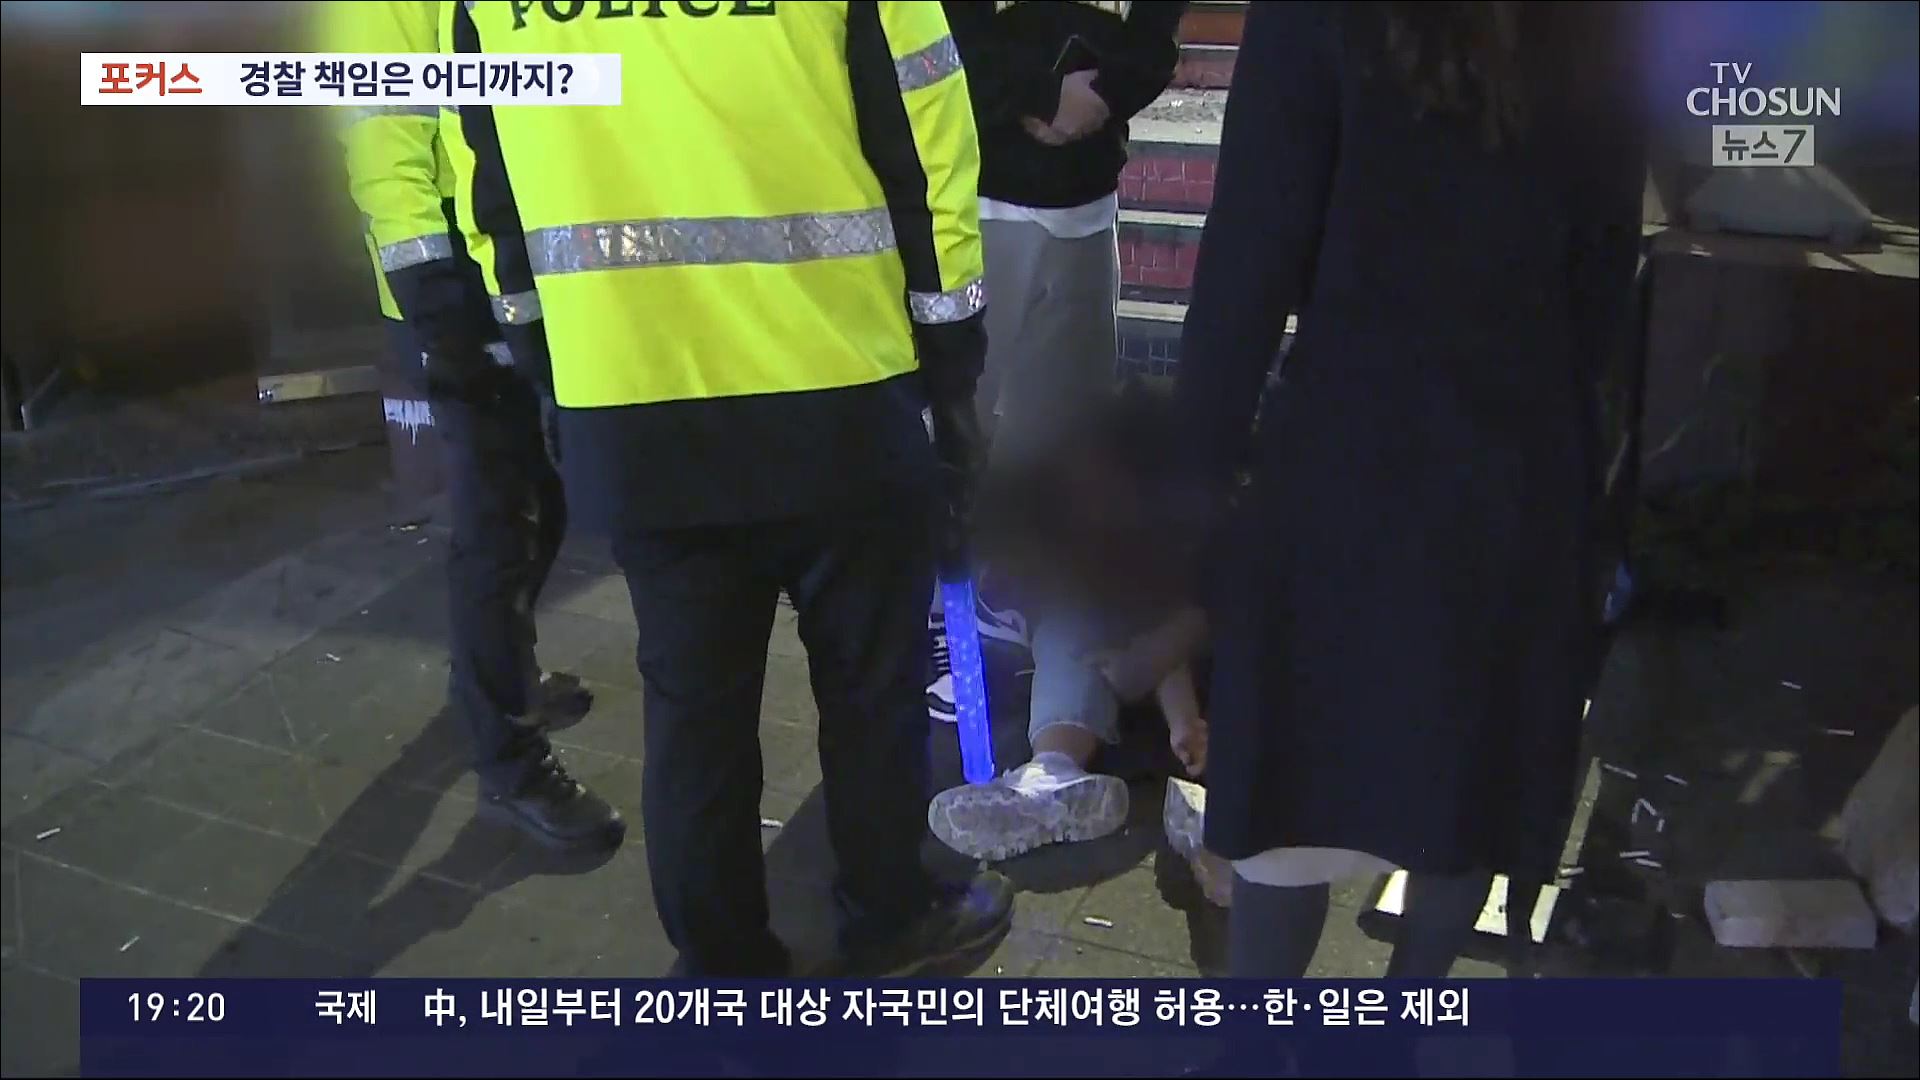 [포커스] 주취자 사망 방치 논란…'경찰 책임' 어디까지?